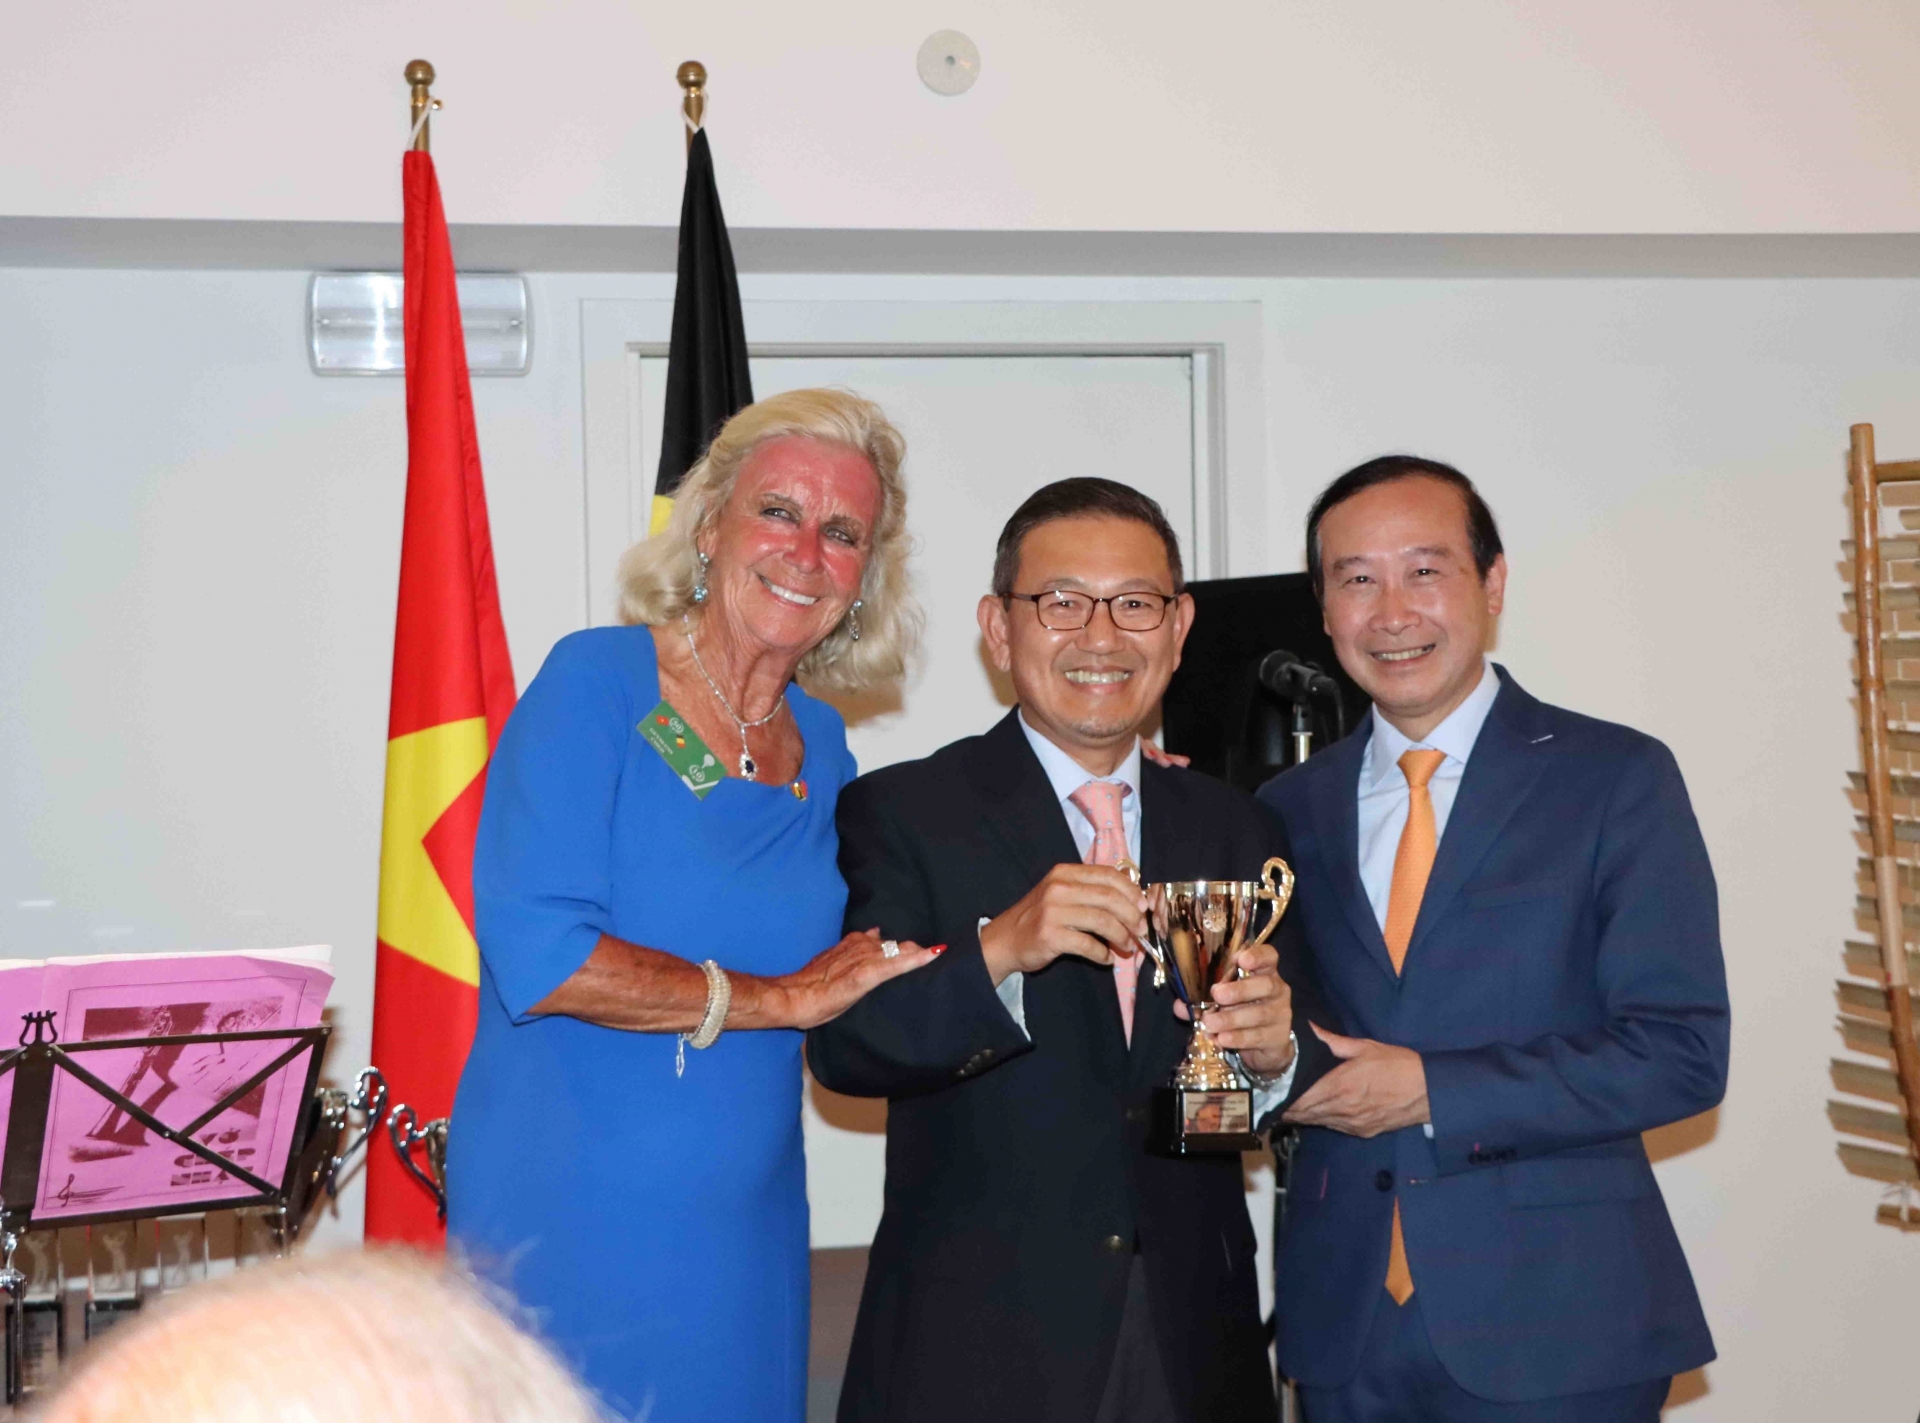 越南驻比利时大使馆与在会安的越南含二恶英橙剂受害者协会比利时代表Chris Geykens联合举行的年度活动。